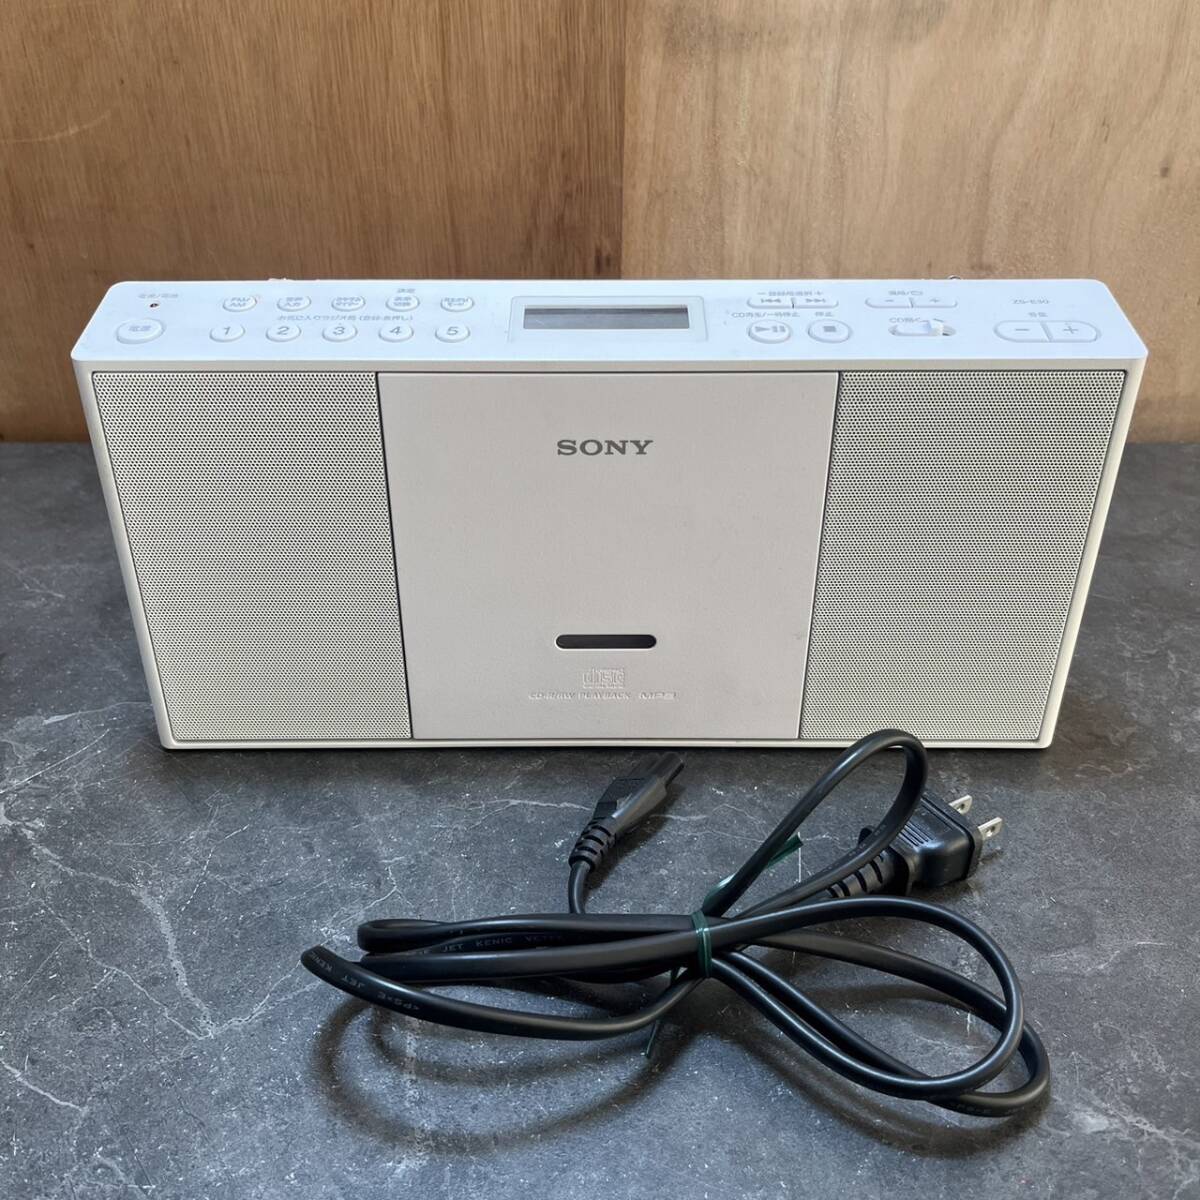 * рабочий товар SONY Sony ZS-E30 CD радио белый звуковая аппаратура ( б/у товар / текущее состояние товар / хранение товар )*